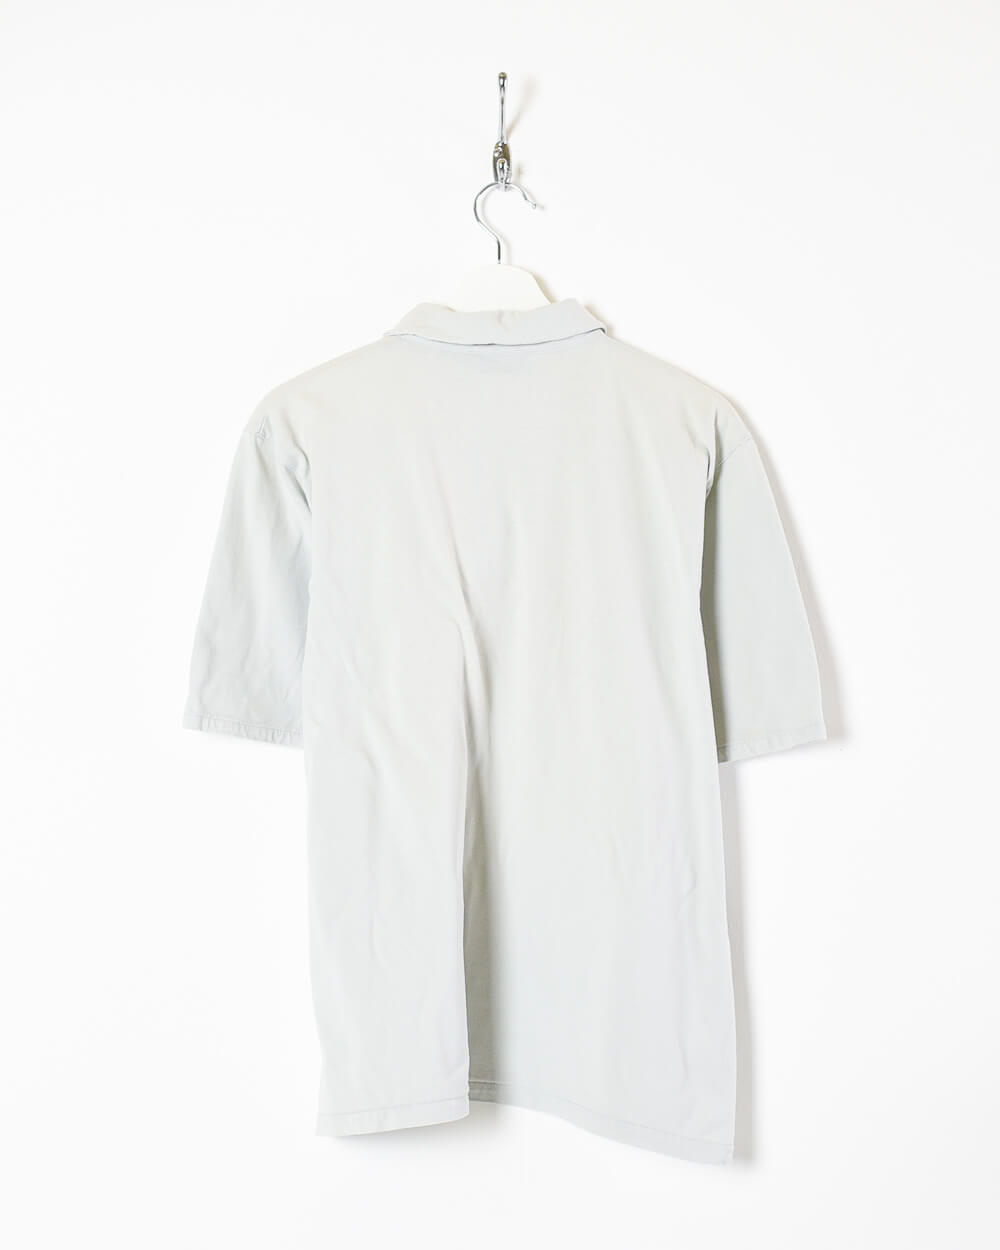 Stone Yves Saint Laurent Polo Shirt - Medium